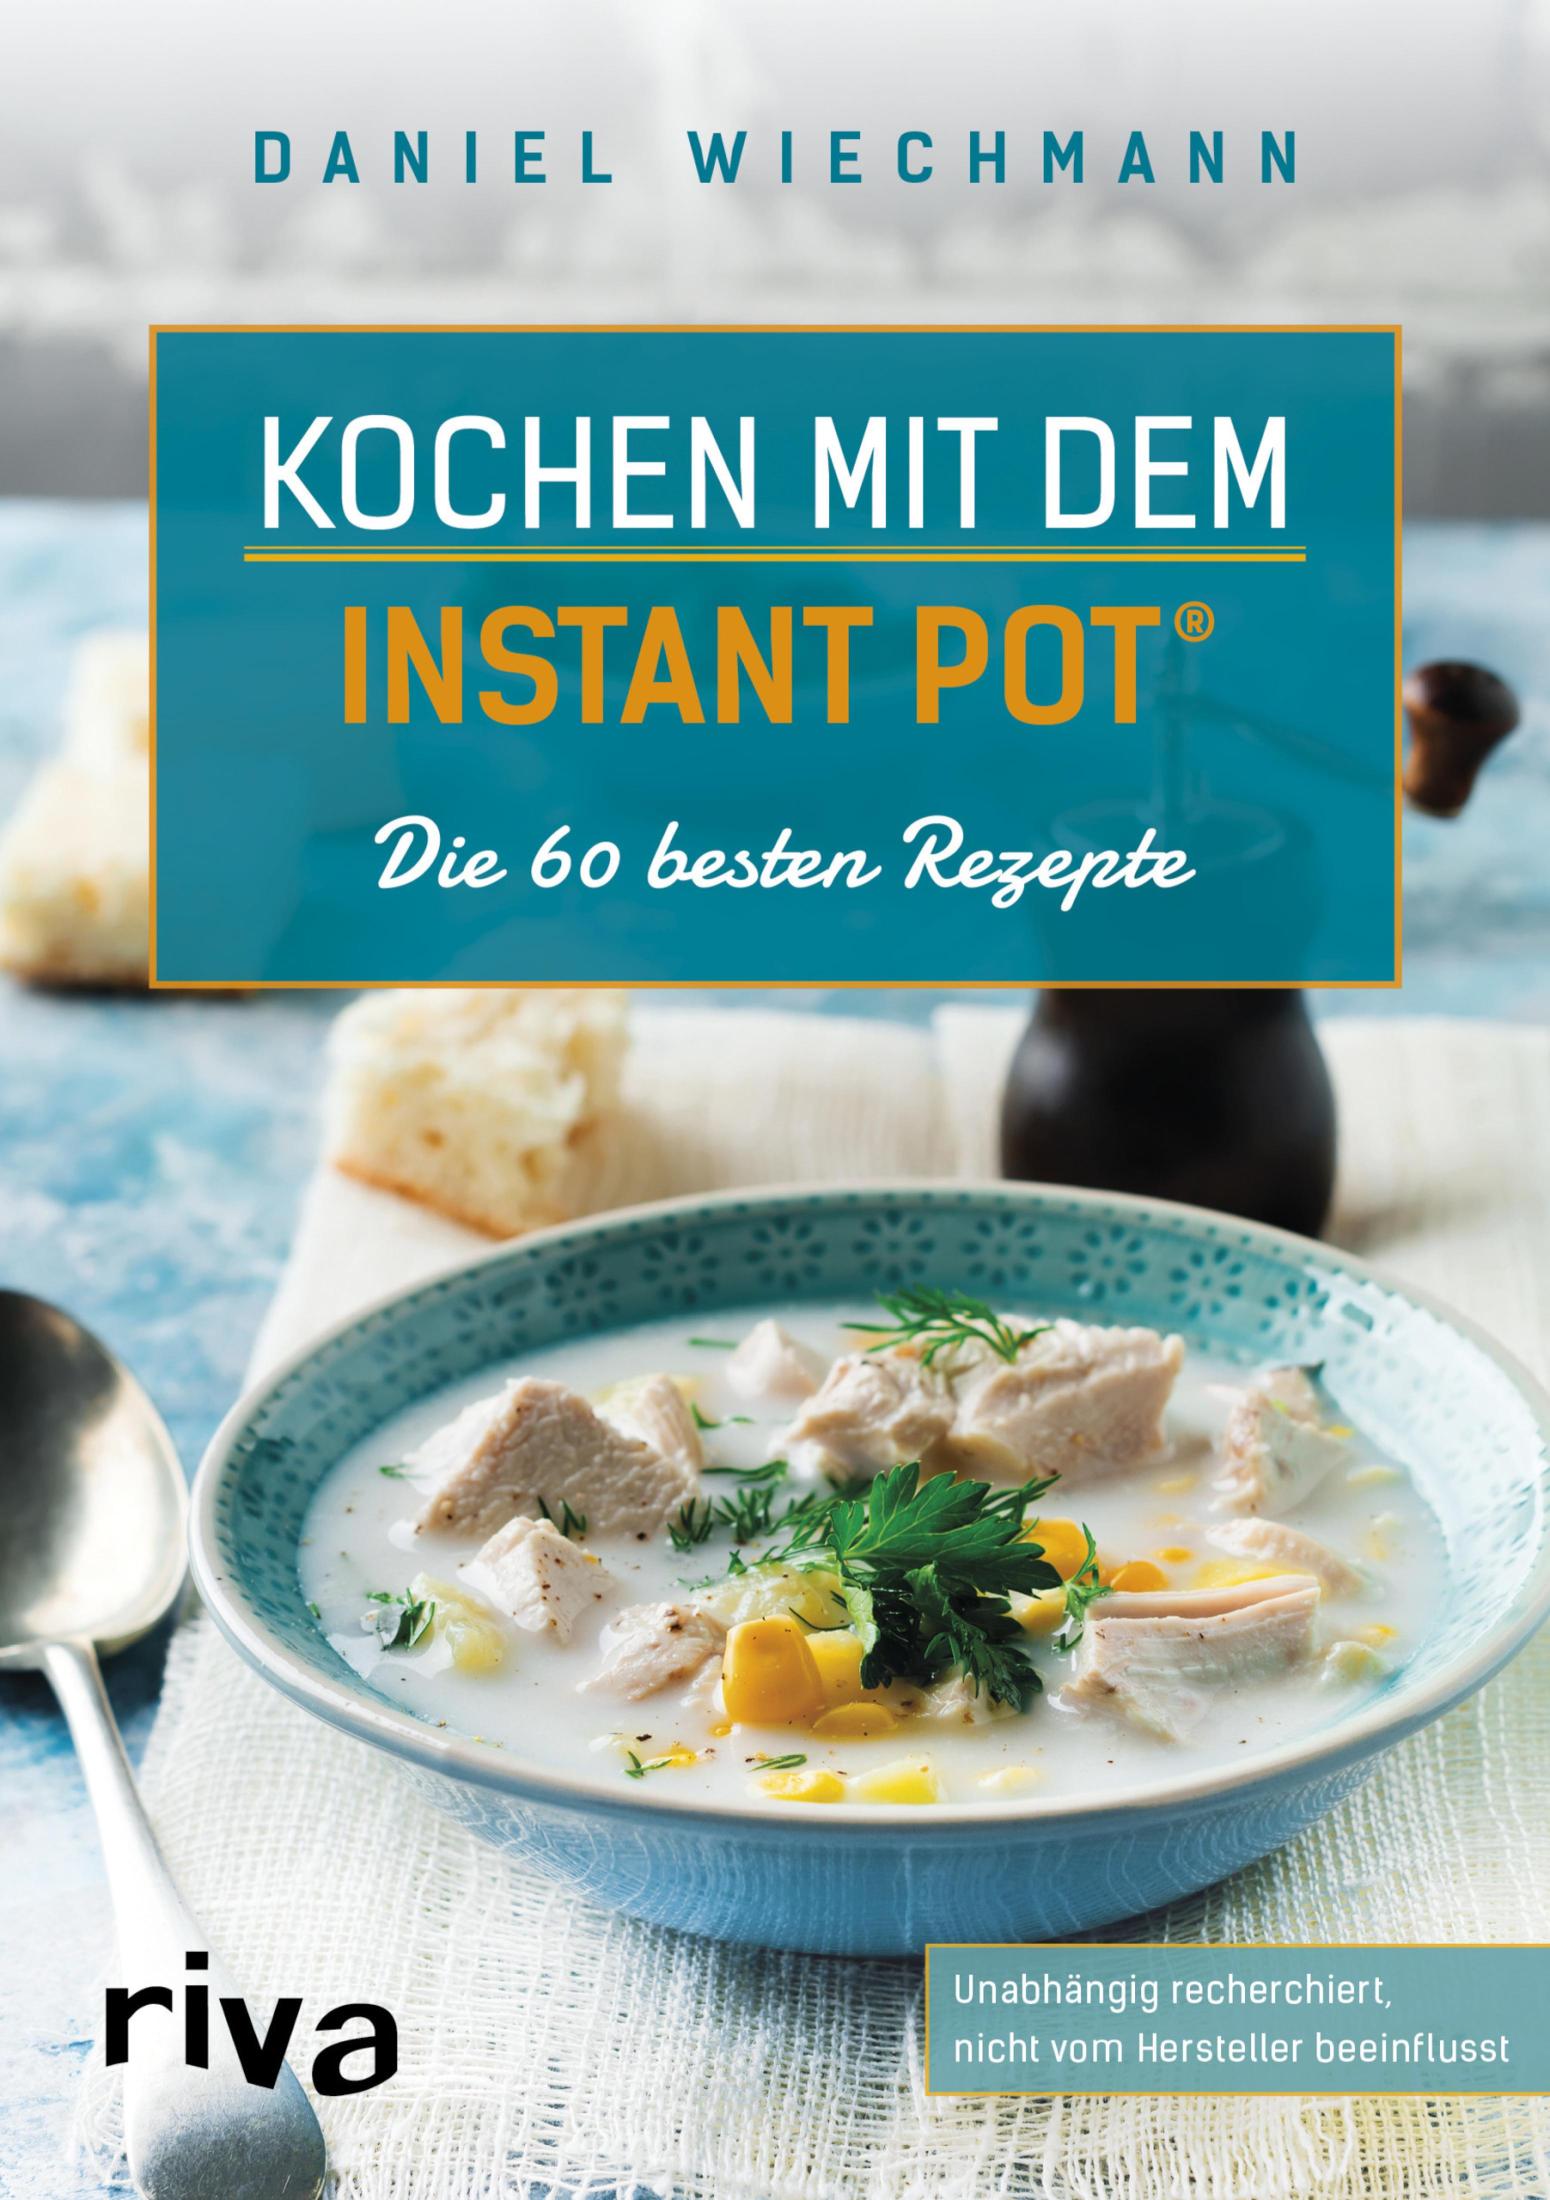 Kochen mit dem Instant Pot® Die 60 besten Rezepte